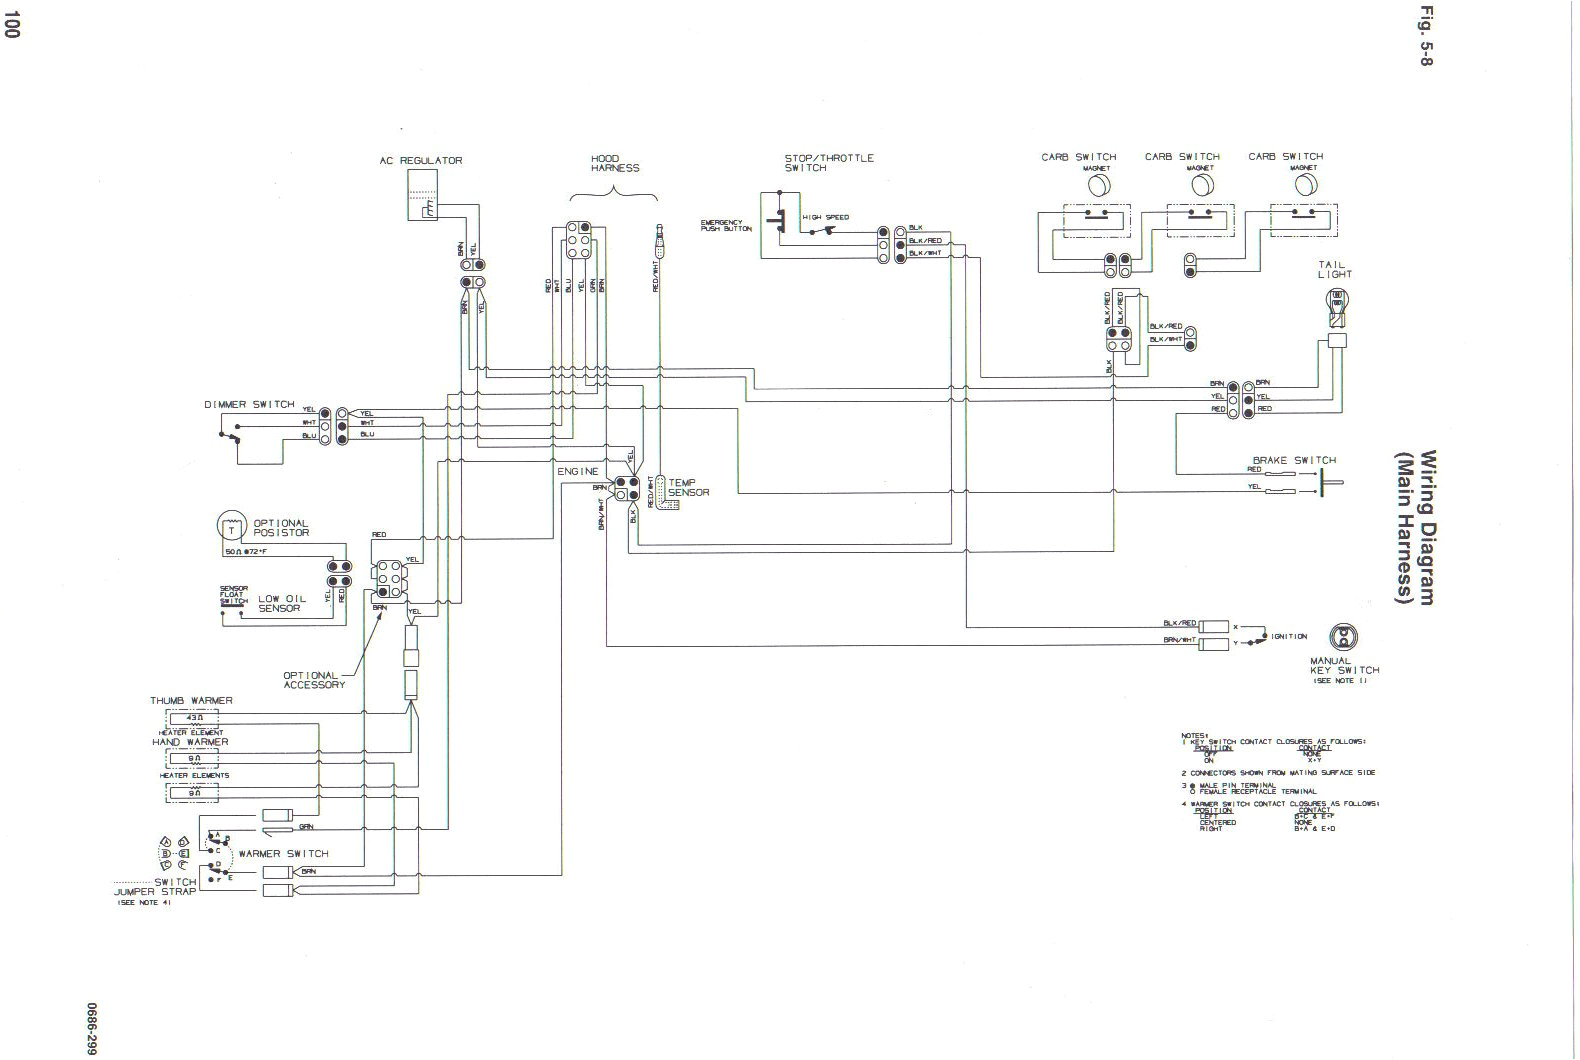 suzuki lt125 wiring diagram wiring diagram 99 suzuki wiring diagram